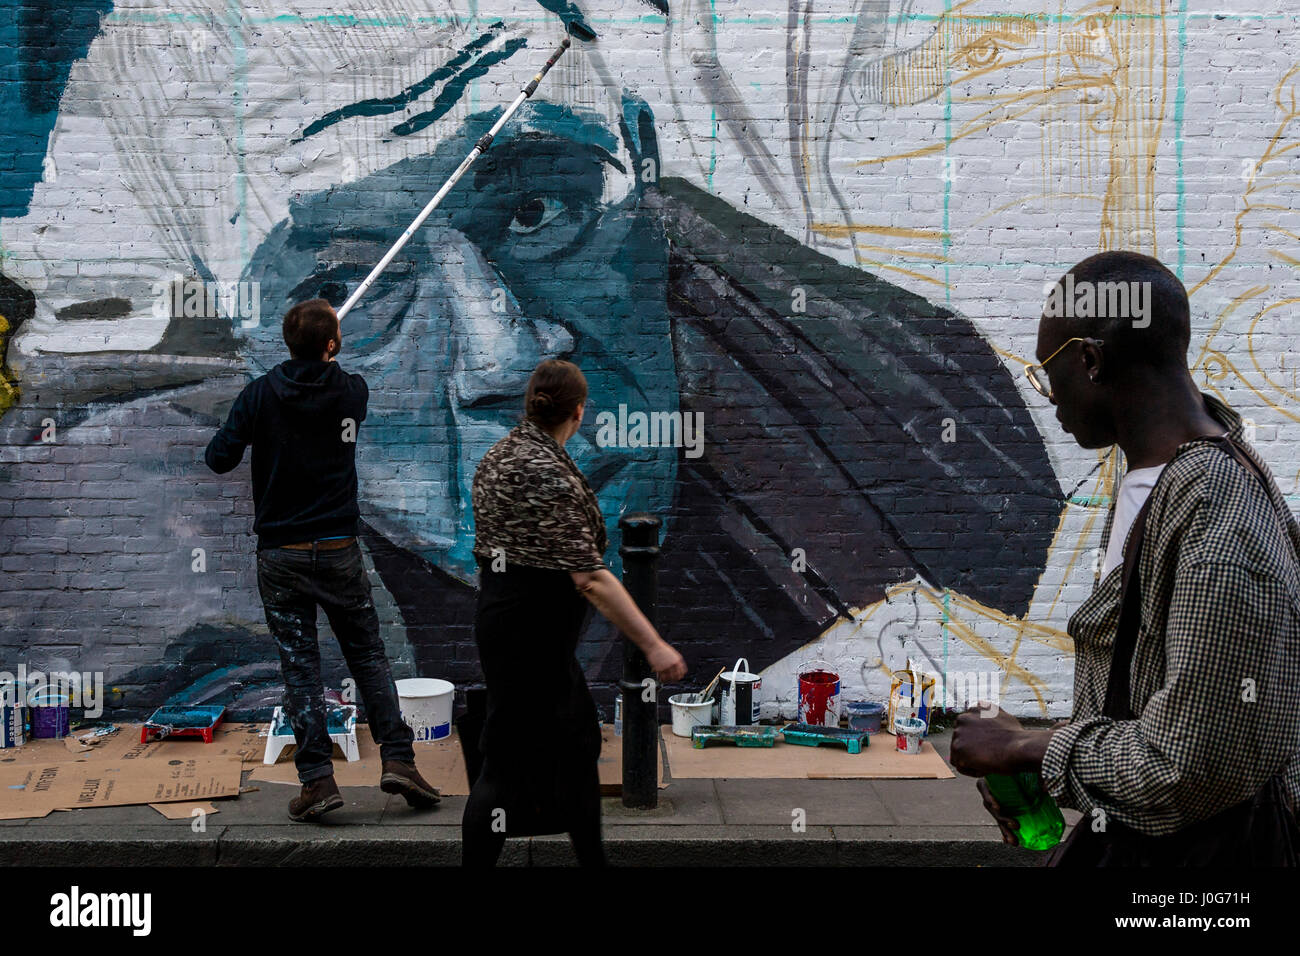 Menschen zu sehen, ein Graffiti-Künstler bei der Arbeit, Brick Lane, London, England Stockfoto